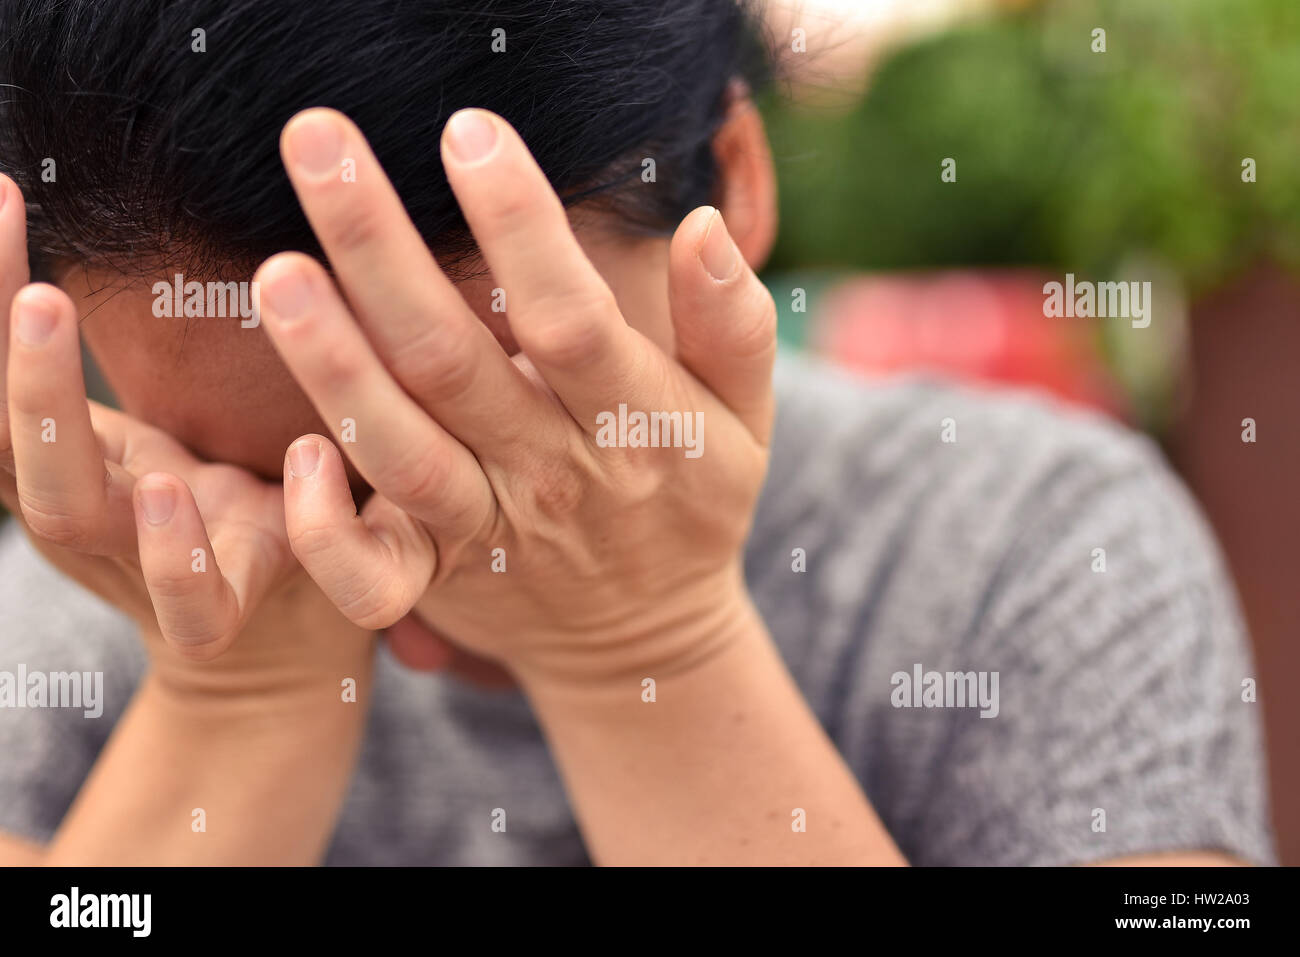 Jeune femme séduisante cachant son visage dans les paumes des mains habillés de façon décontractée. Banque D'Images